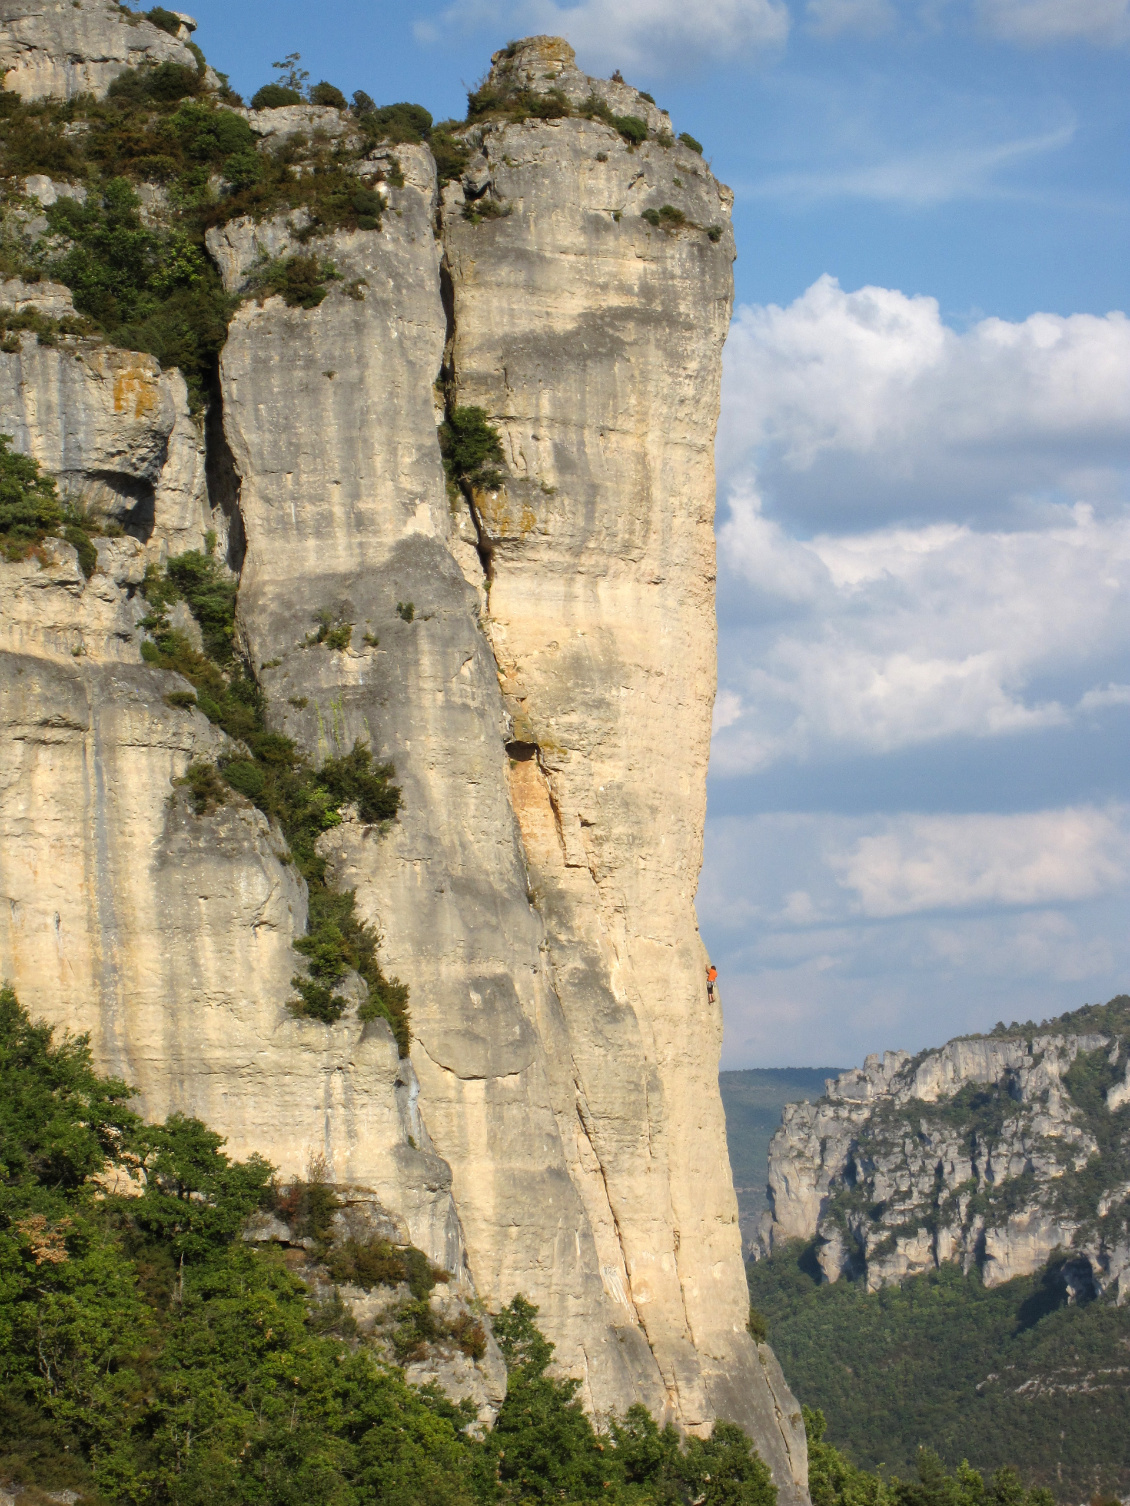 Voyage vertical. Les gorges de la Jonte, de la Dourbie et du Tarn sont un véritable paradis pour le grimpeur.
Photo : Olivier et Johanna.